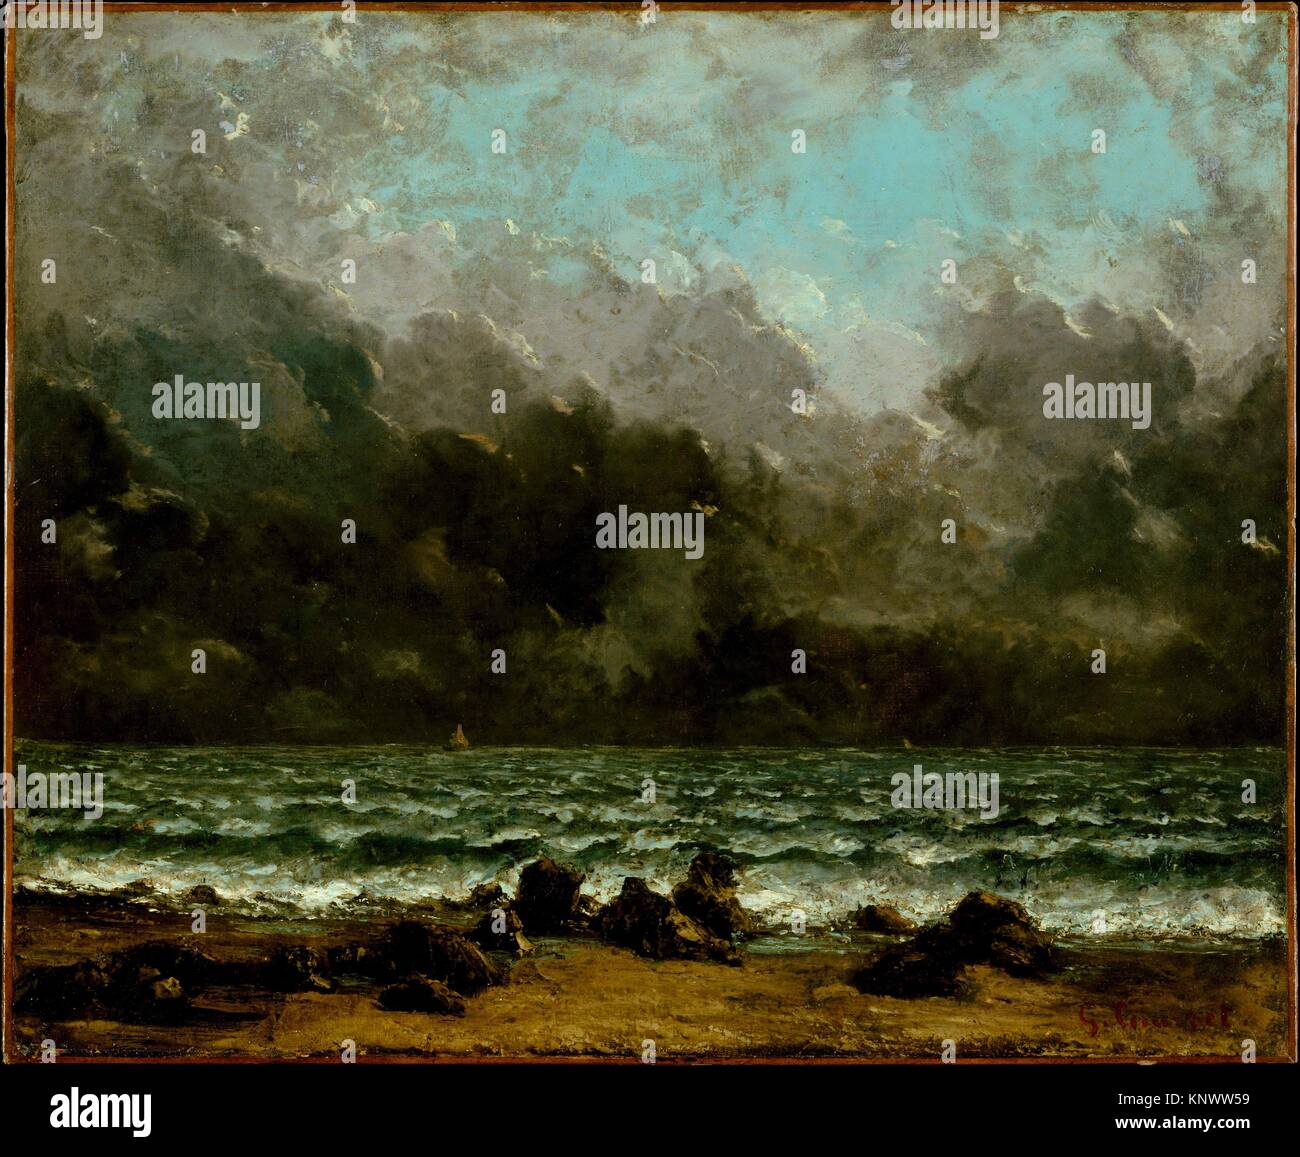 Das Meer. Künstler: Gustave Courbet (Französisch, Ornans 1819-1877 La Tour-de-Peilz); Datum: 1865 oder später; Medium: Öl auf Leinwand; Abmessungen: 20 x 24 in. Stockfoto